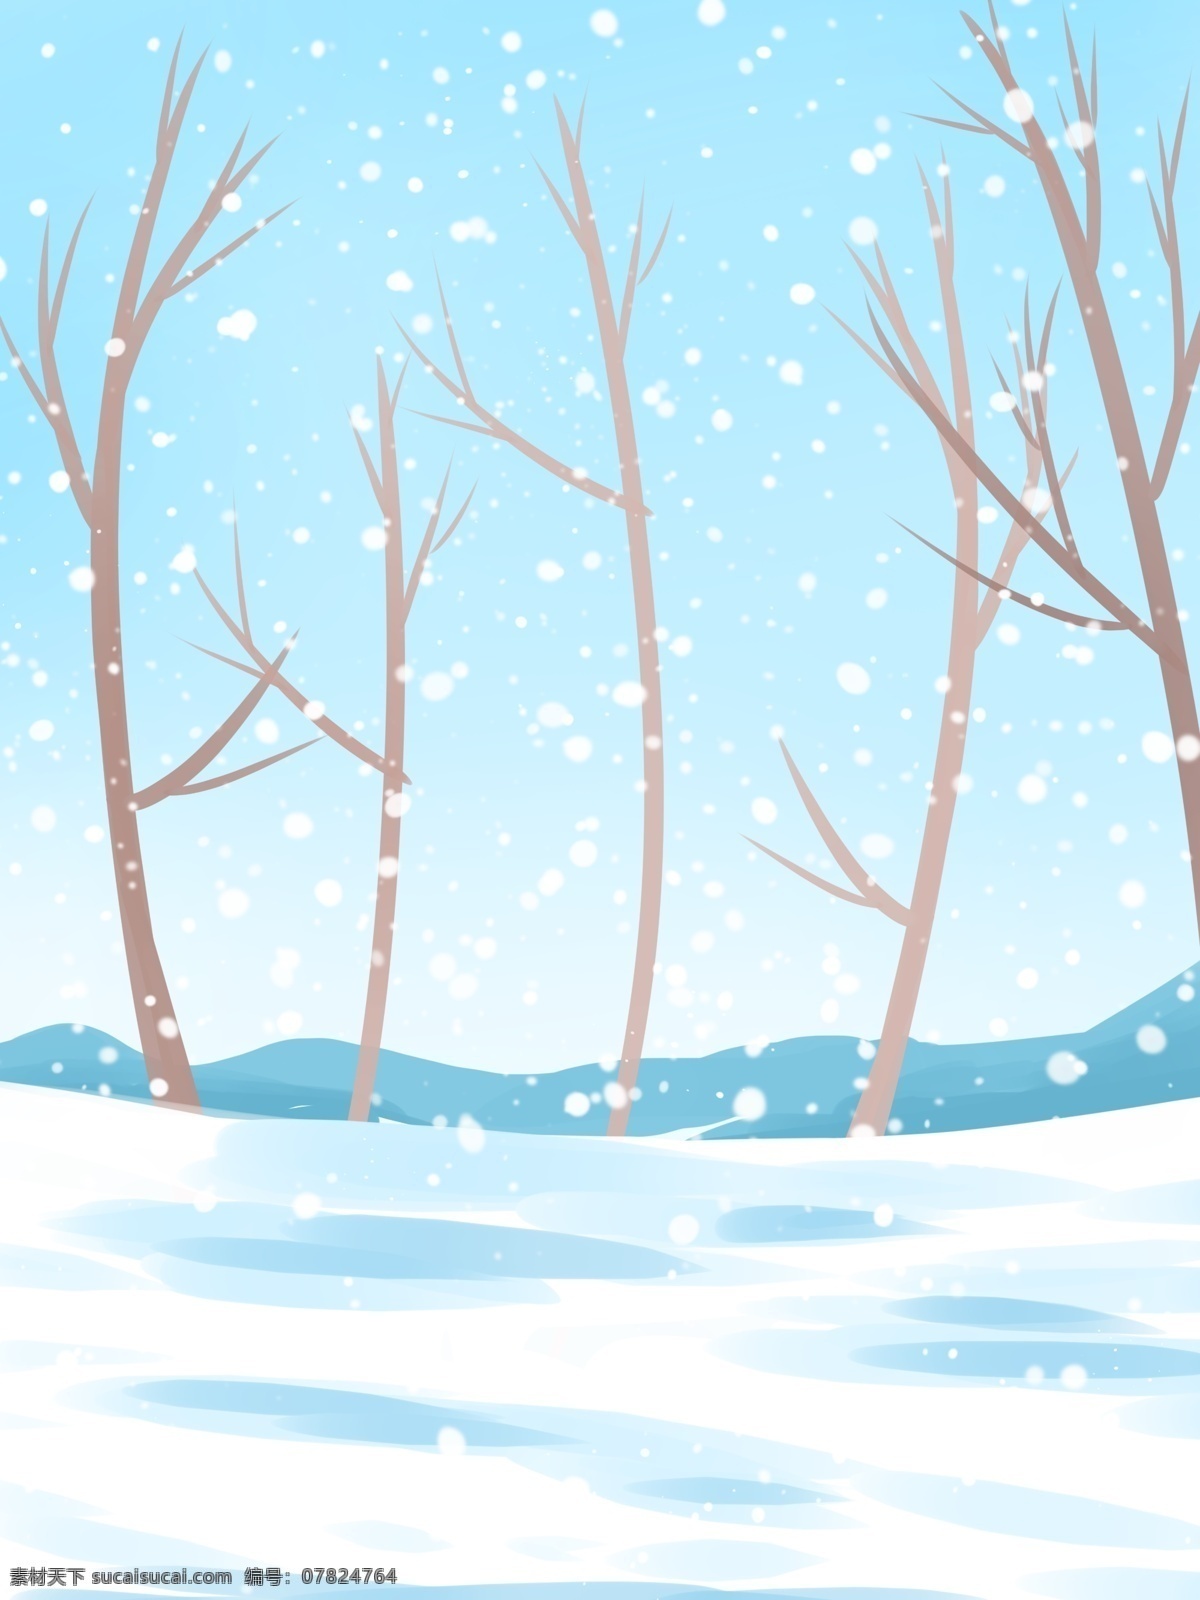 卡通 冬至 节气 树林 雪景 背景 下雪 雪花 背景设计 冬天背景 唯美雪地 彩绘背景 大寒背景 树木